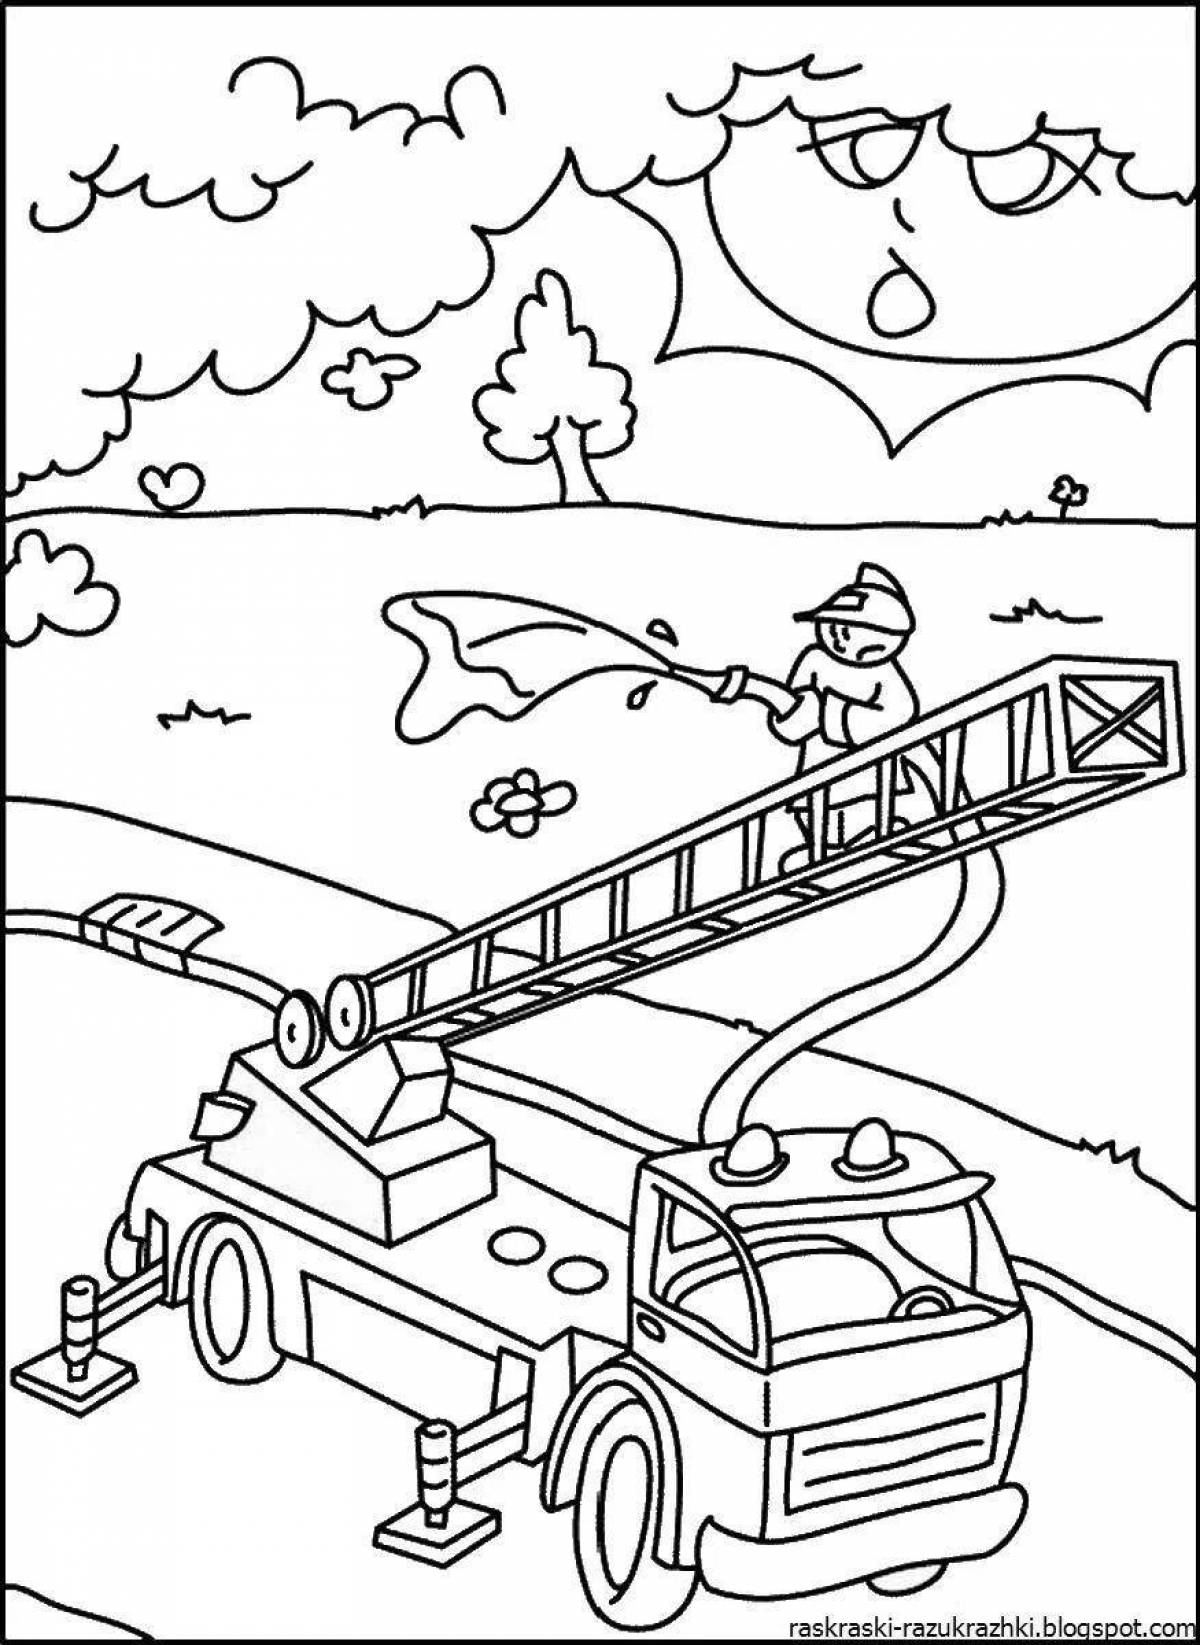 Прекрасный рисунок пожарного для детей